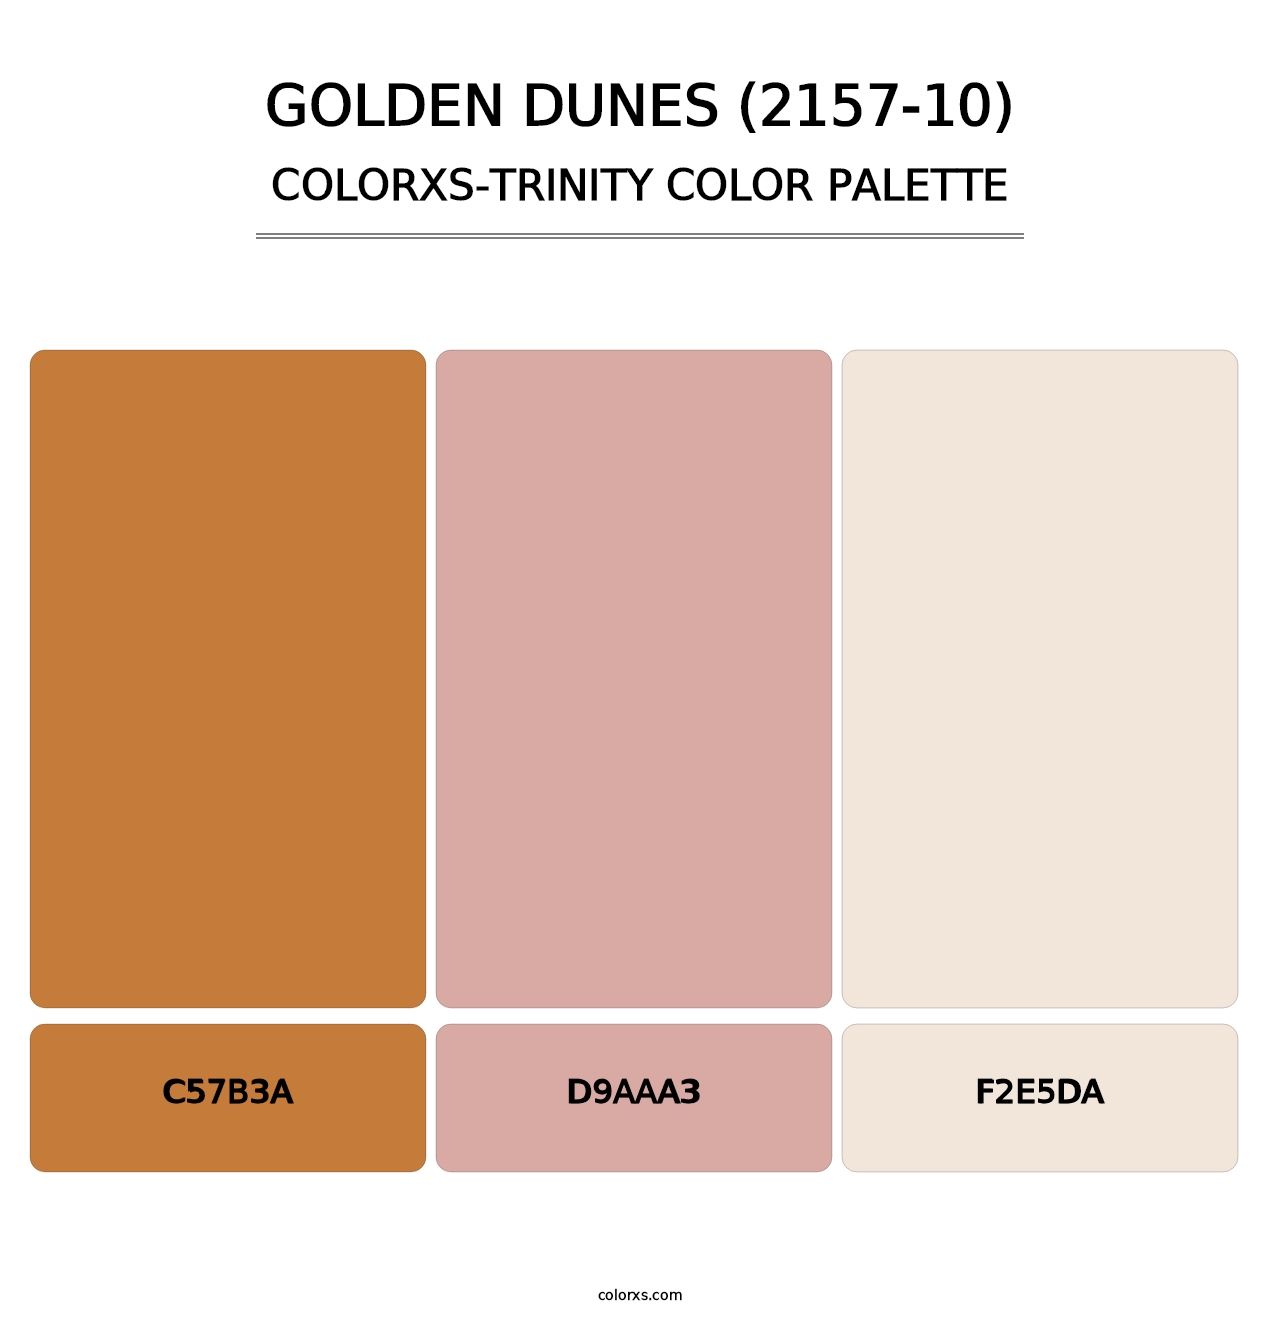 Golden Dunes (2157-10) - Colorxs Trinity Palette